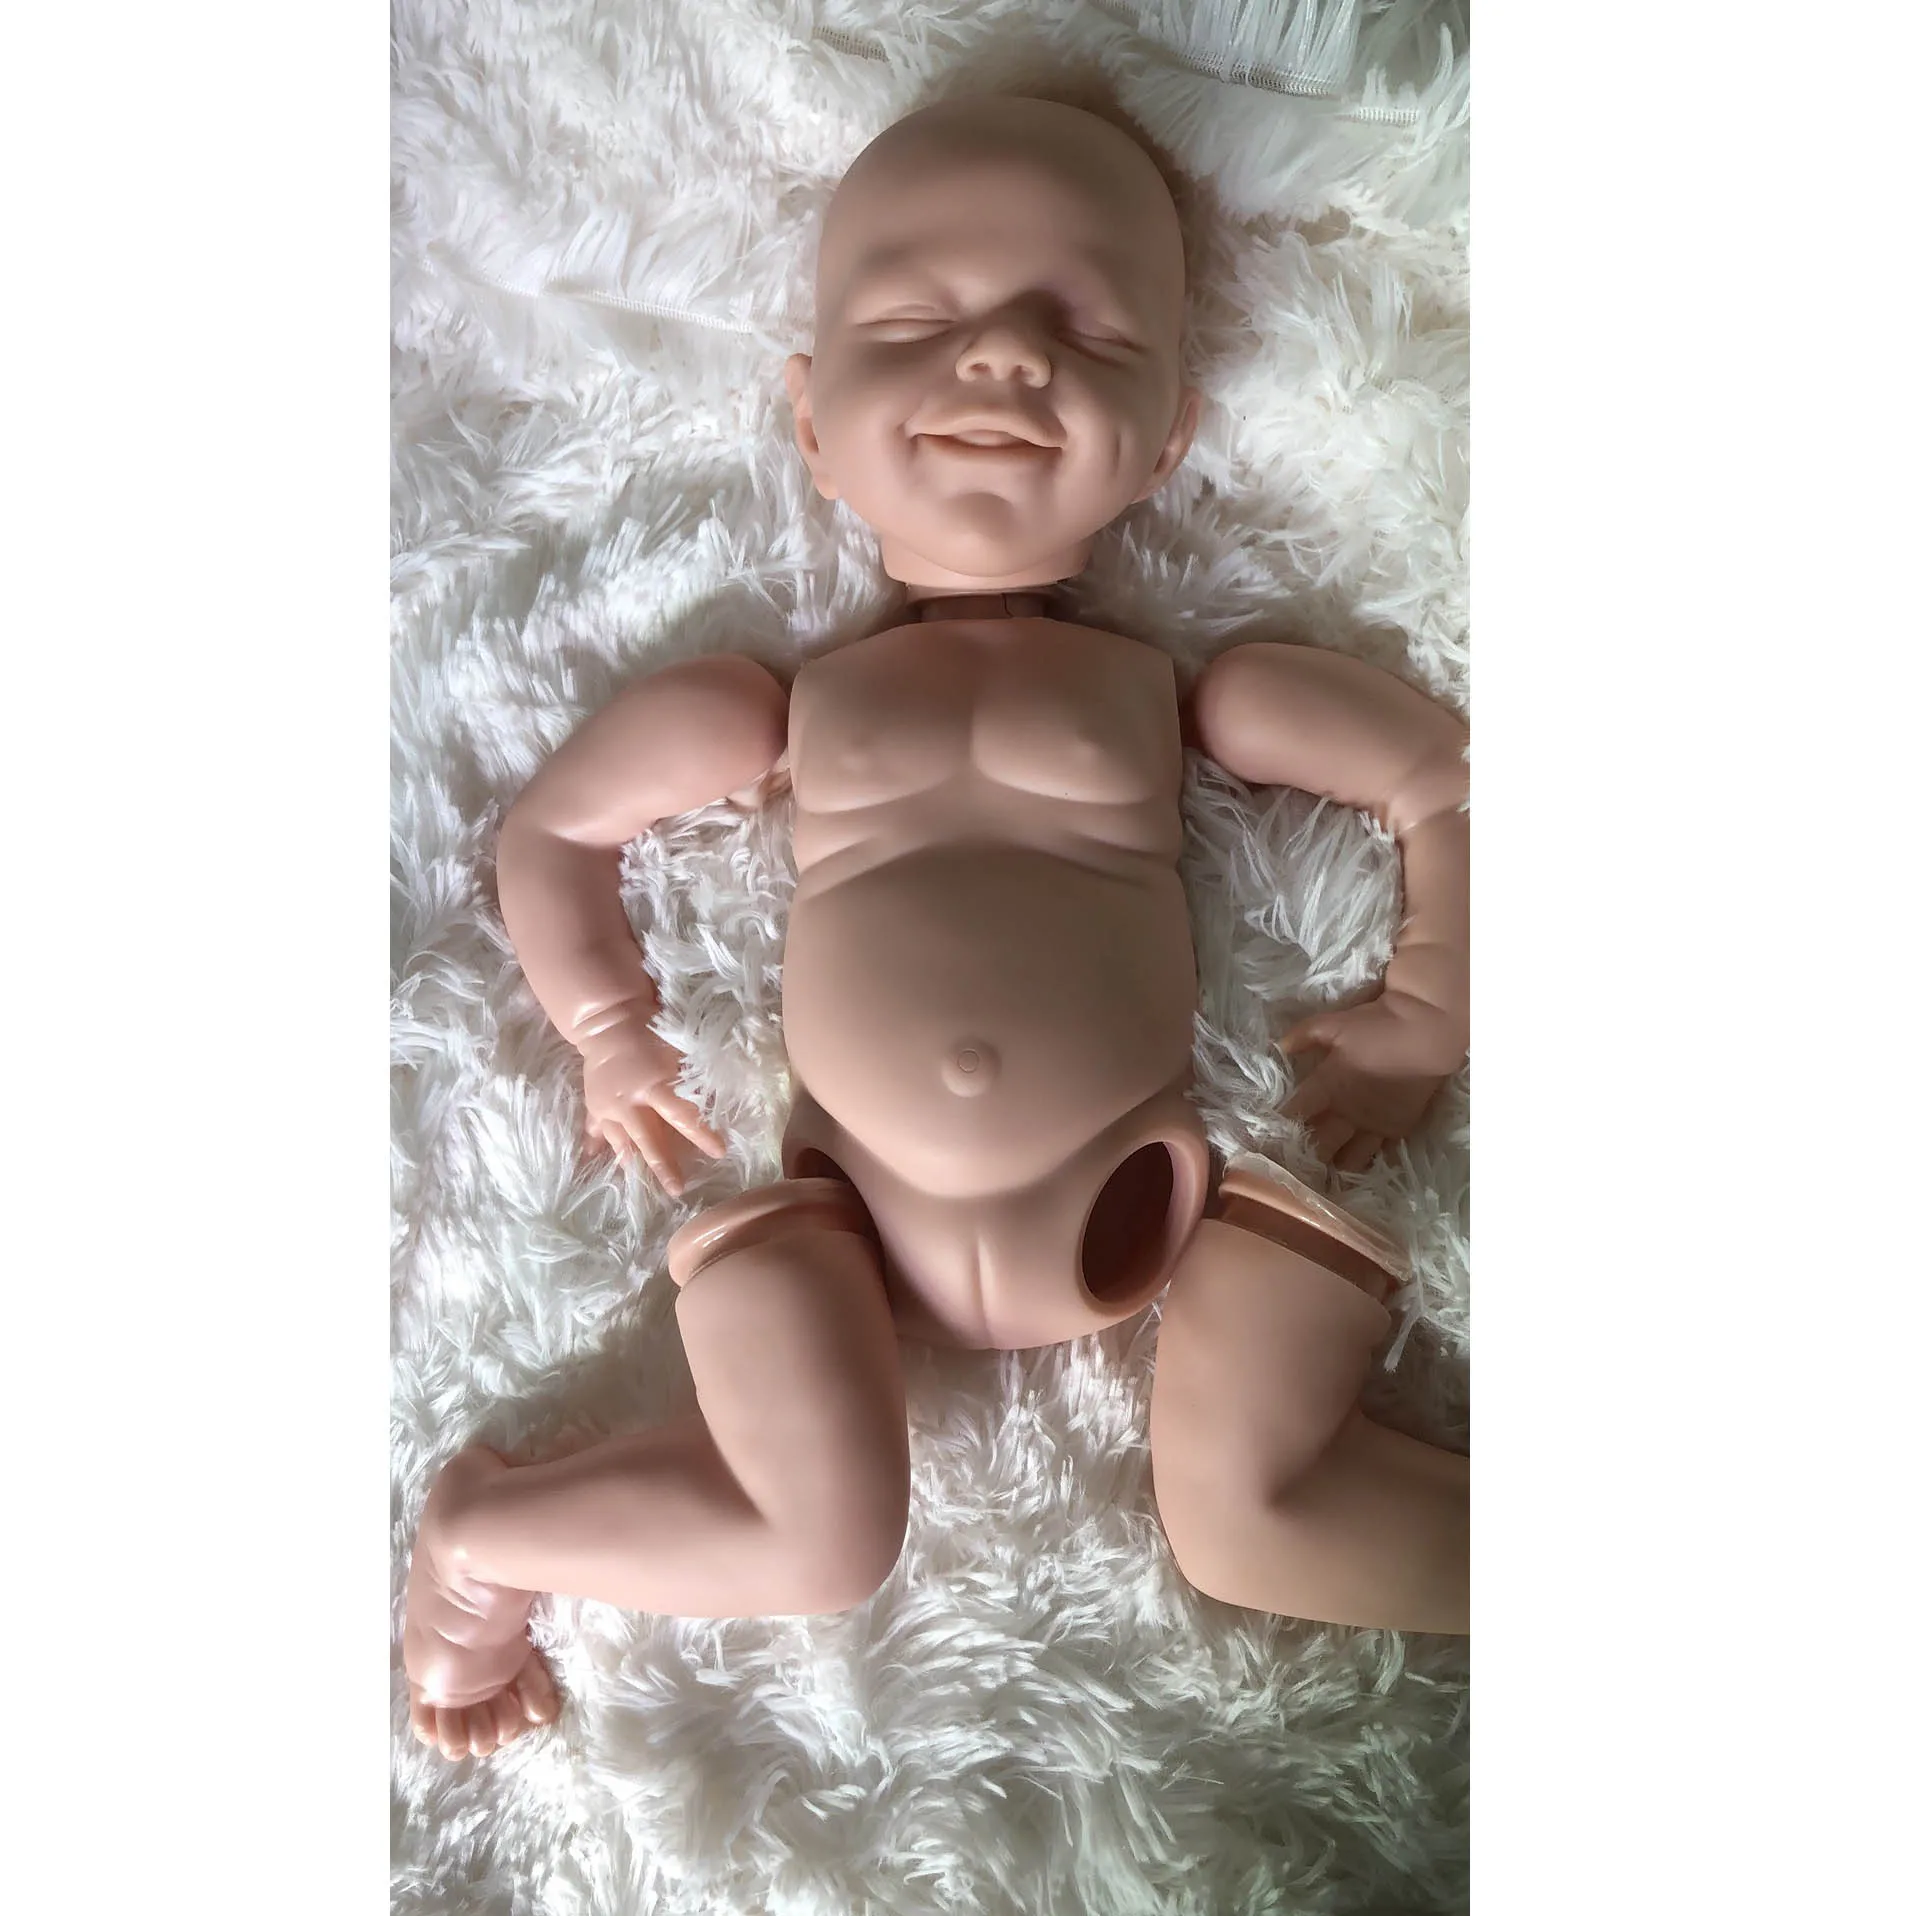 17 Polegadas de Vinil Reborn Baby Doll Kit abril Sorriso do Rosto sem pintura, não montados, Inacabado Boneca Peças DIY em Branco Renascer Boneca Kit